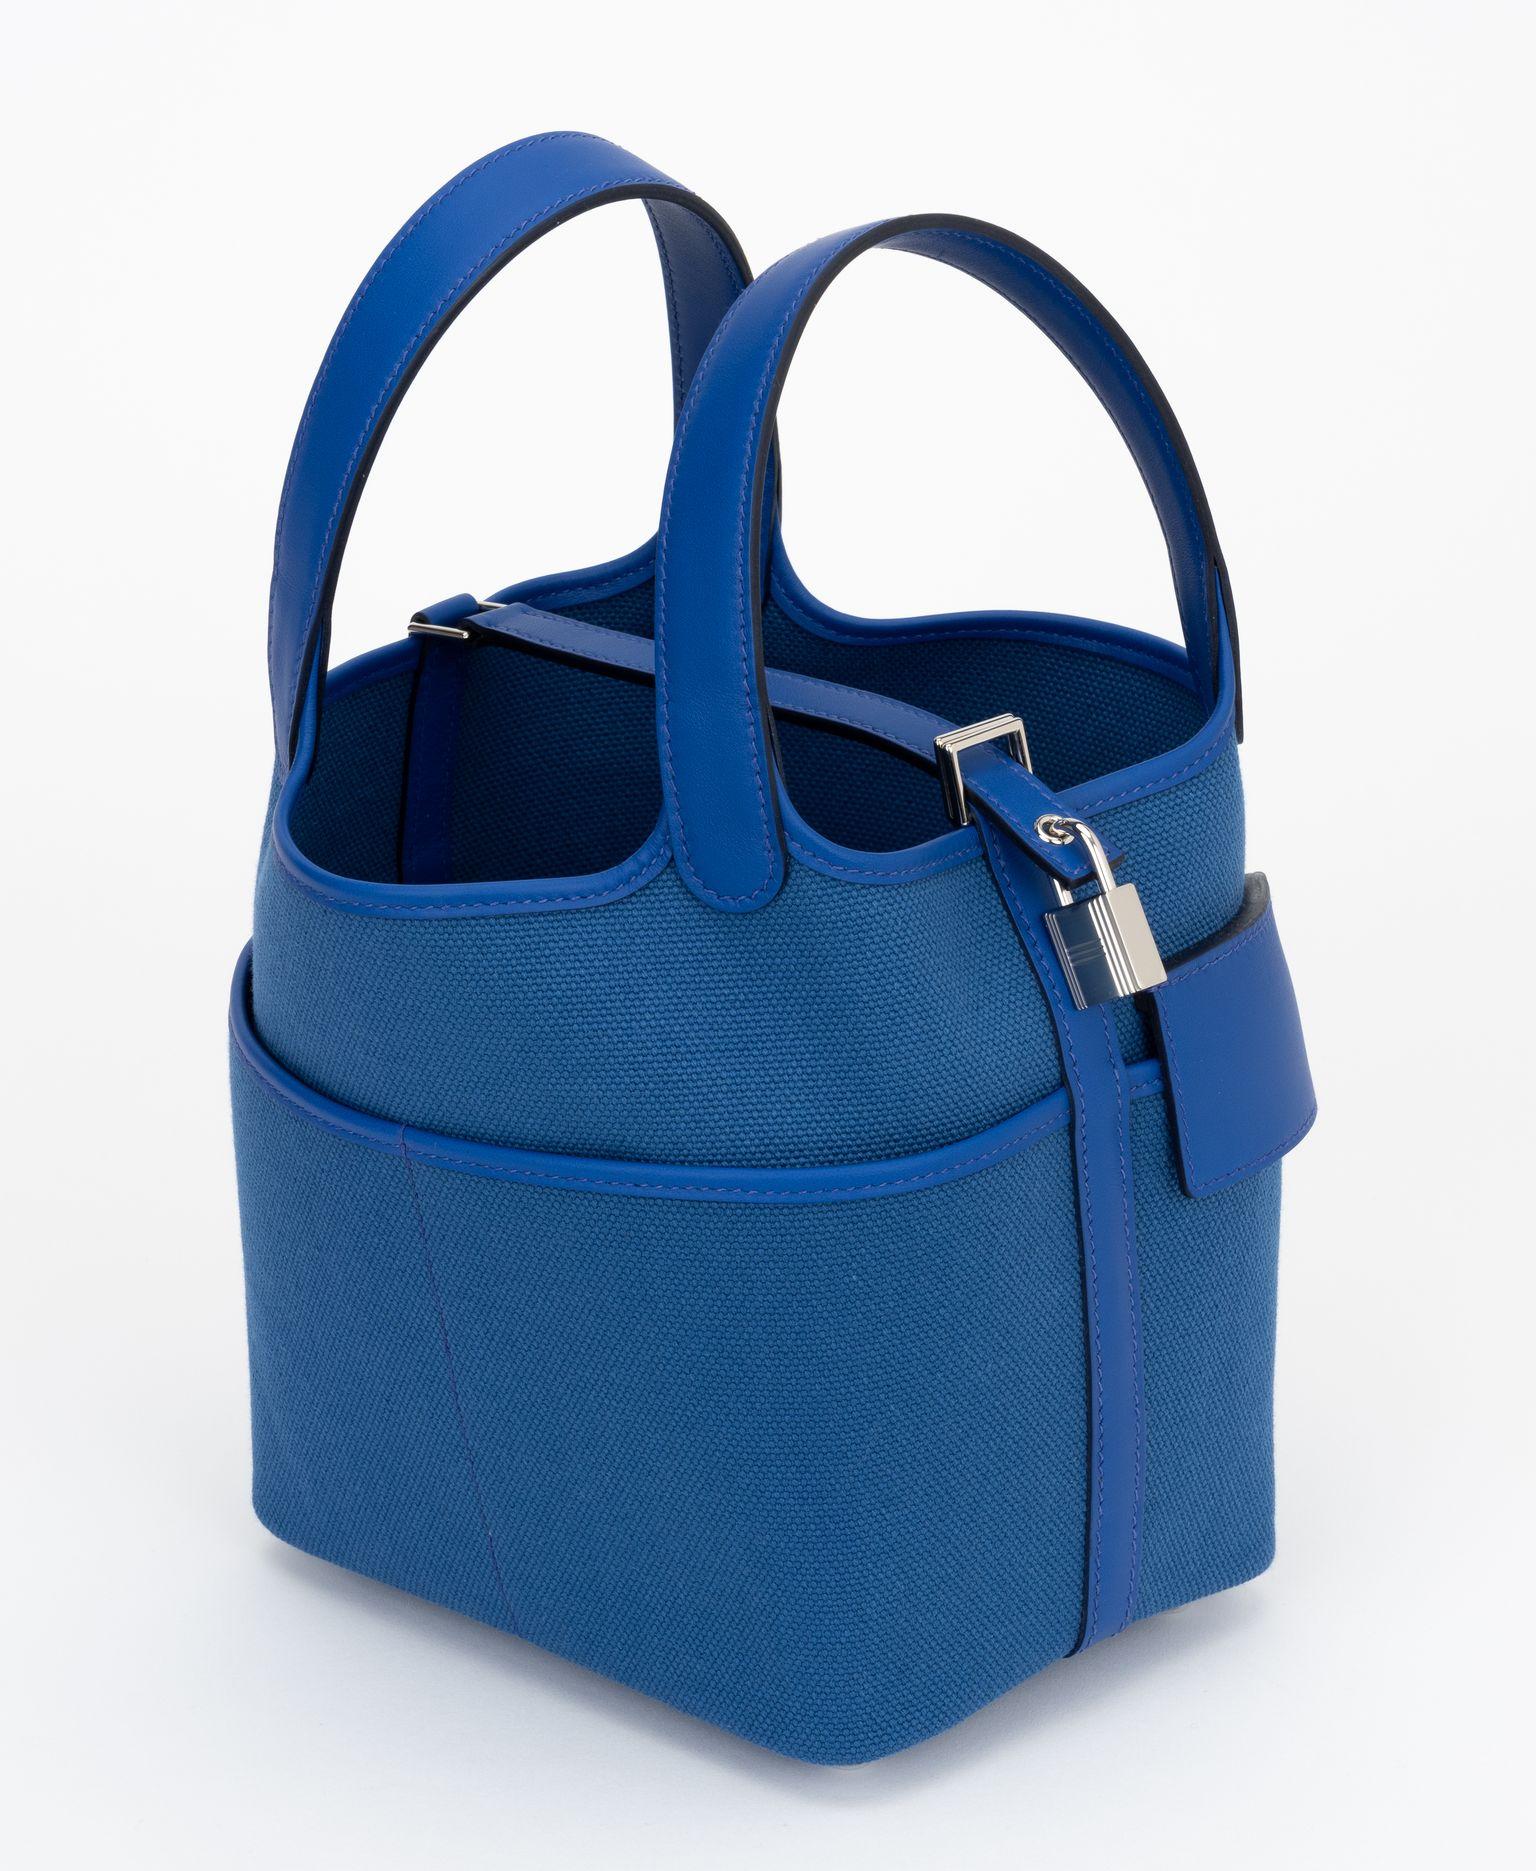 Hermès neu in Box blau königlich Swift und Toile Geoland Cargo Picotin Lock 18, Palladium Hardware . Diese schicke und schöne Tasche ist aus robustem Canvas in Königsblau gefertigt. Die Tasche verfügt über Looping-Ledergriffe oben, Außentaschen und